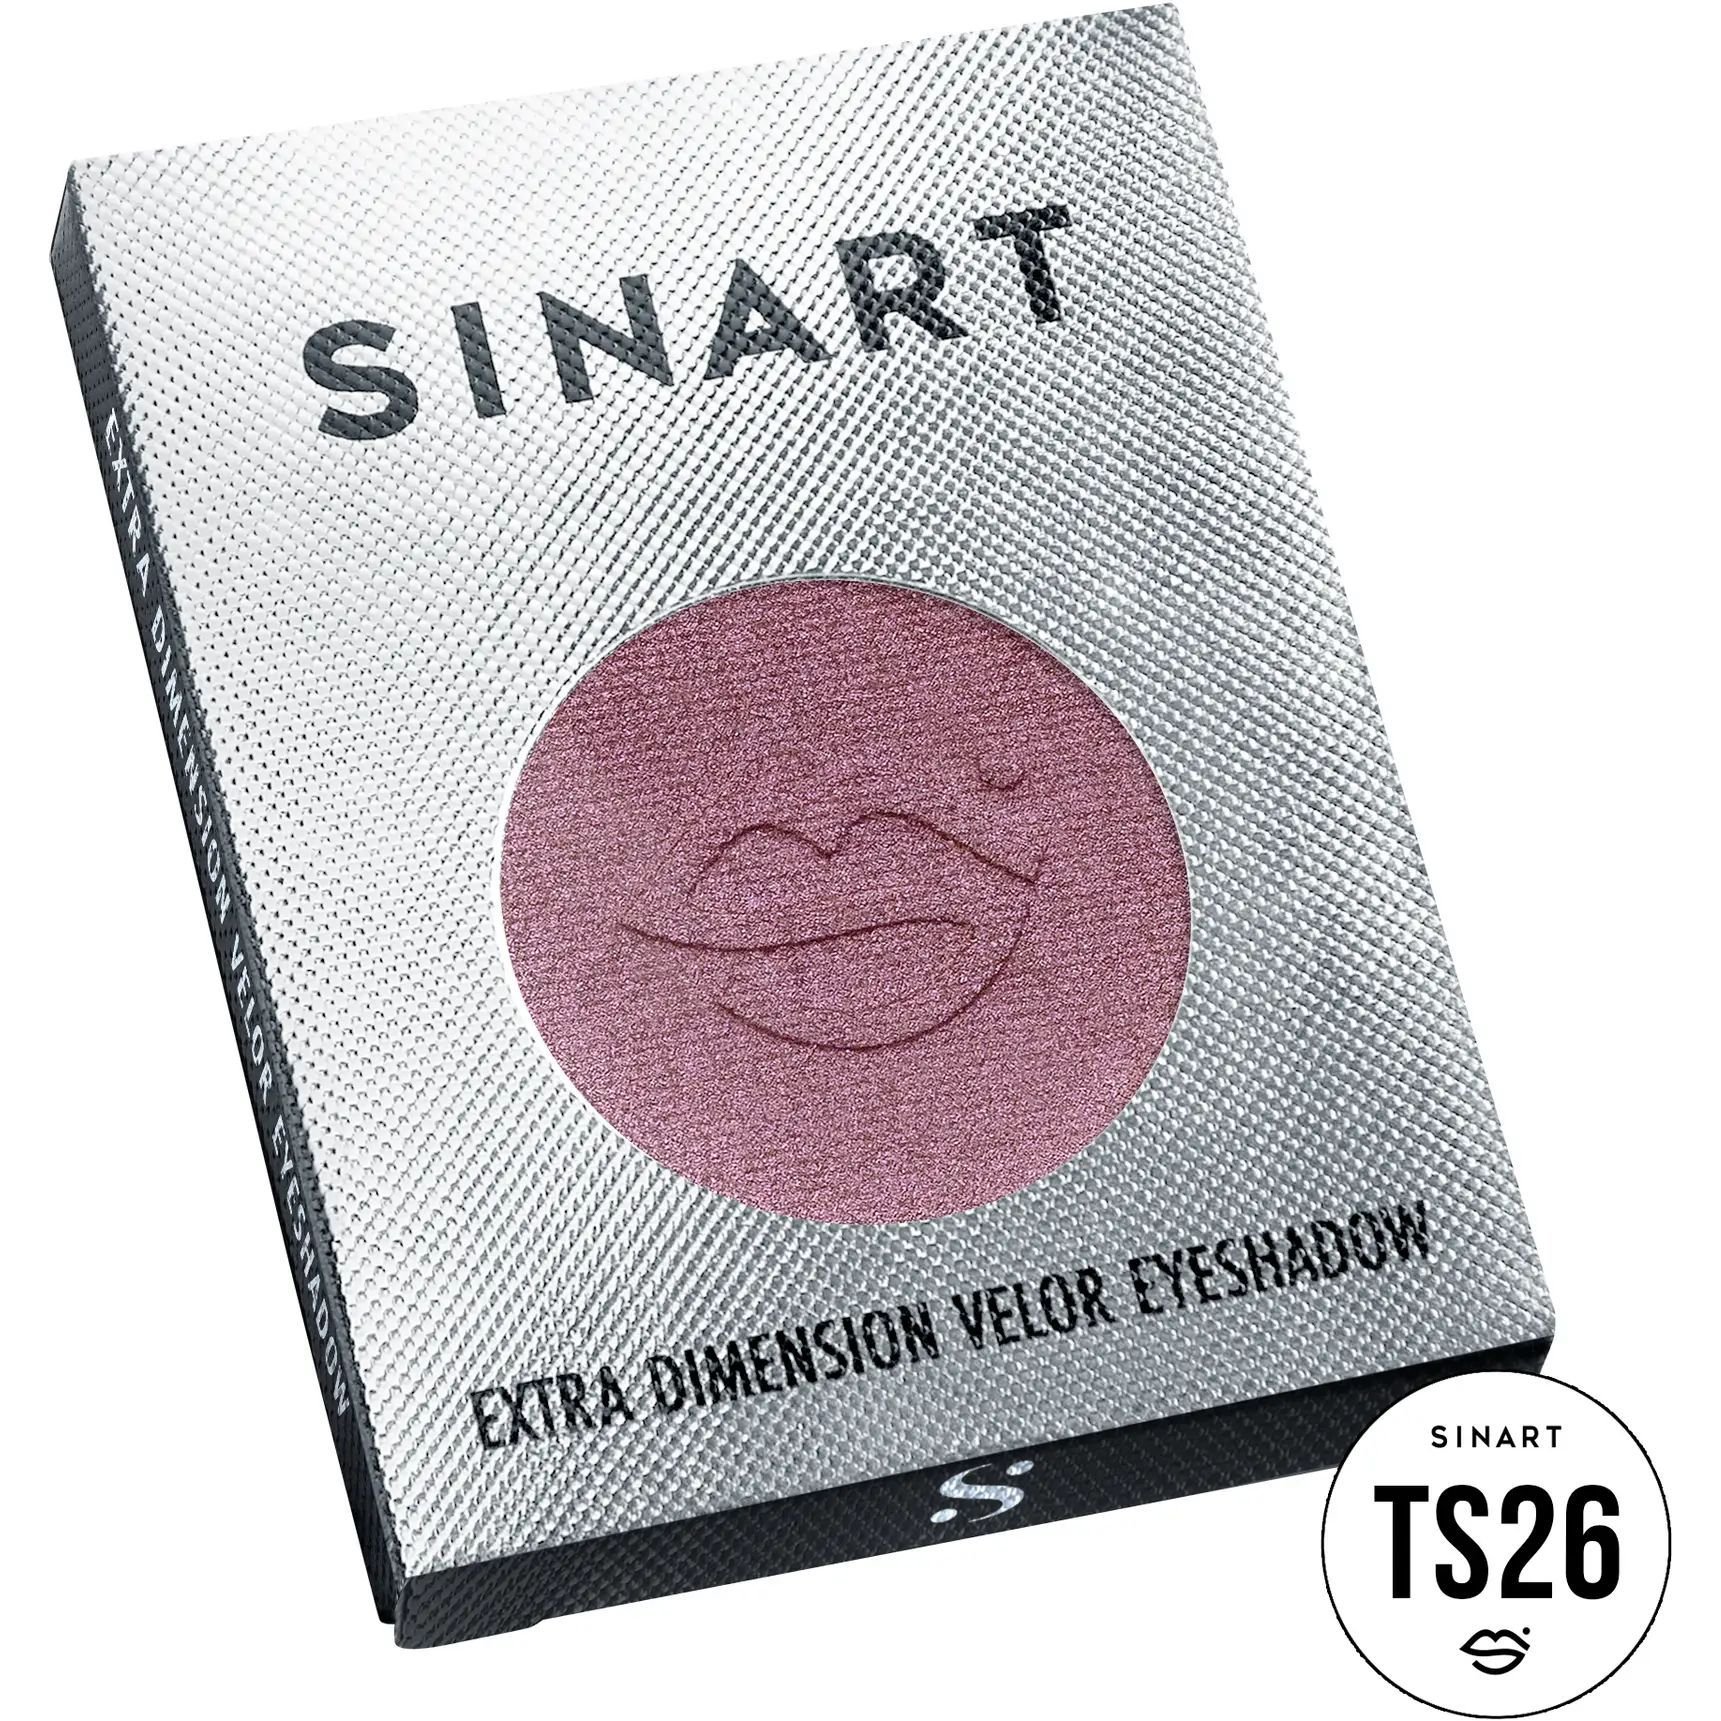 Прессованные тени для век Sinart TS26 Extra Dimension Velor Eyeshadow - фото 3